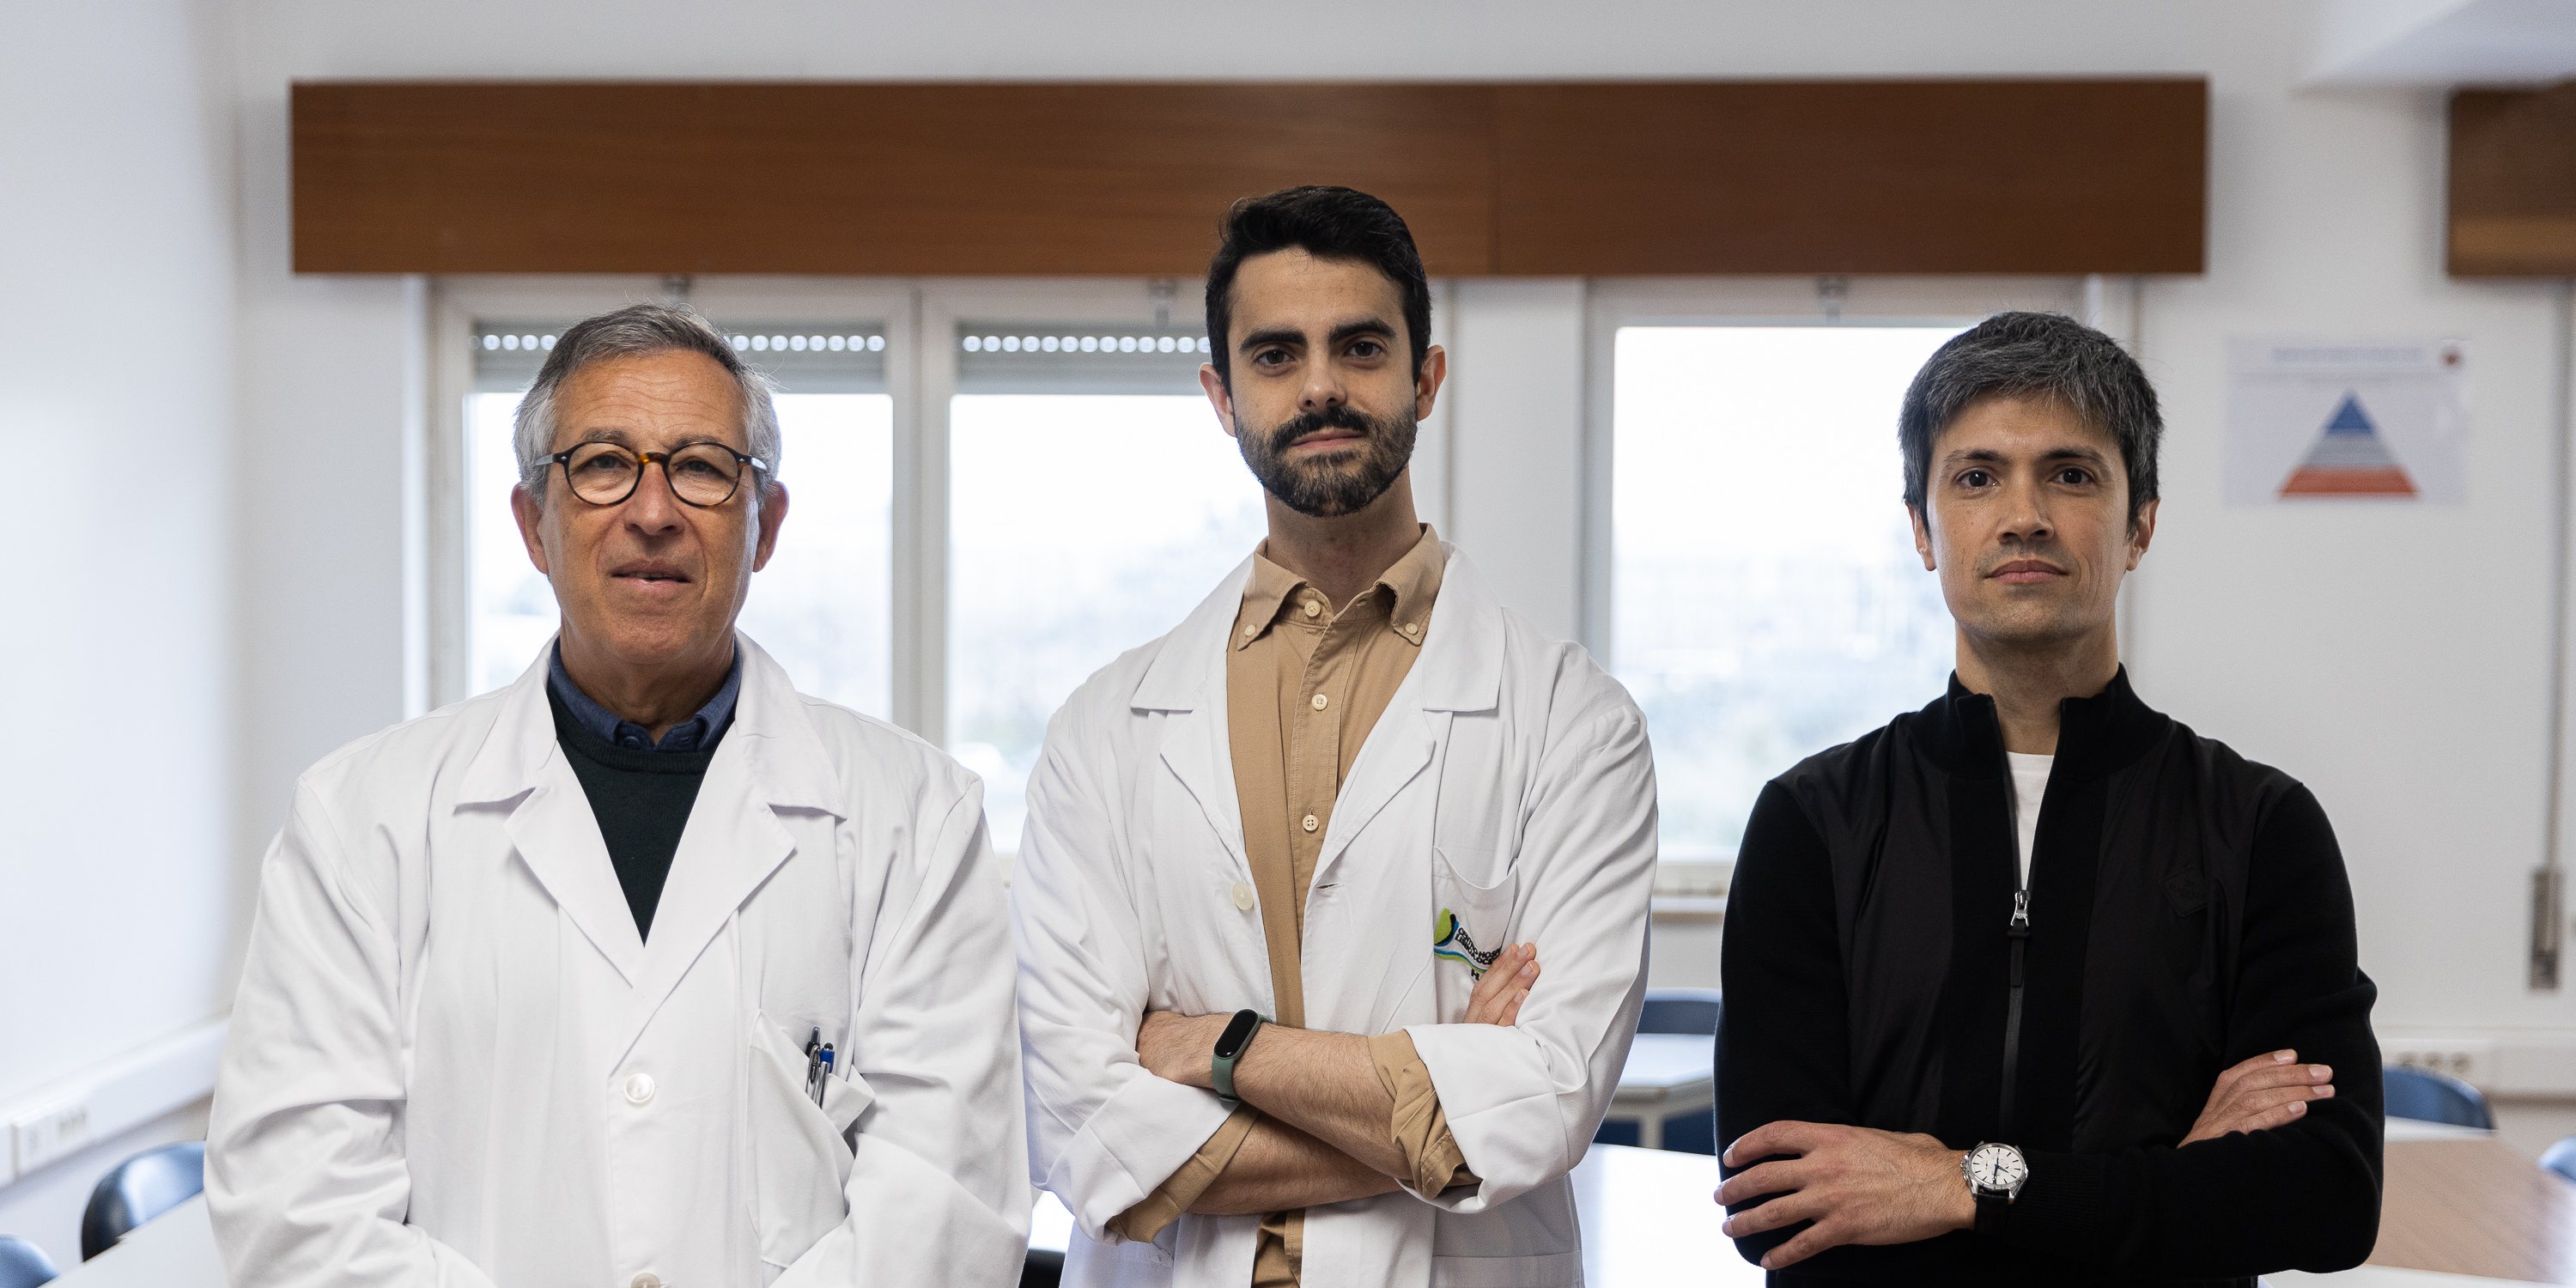 Miguel Mendes, Gonçalo Cunha e Rui Albuquerque avaliam doentes cardíacos para detetar precocemente doenças mentais ou neurodegenerativas